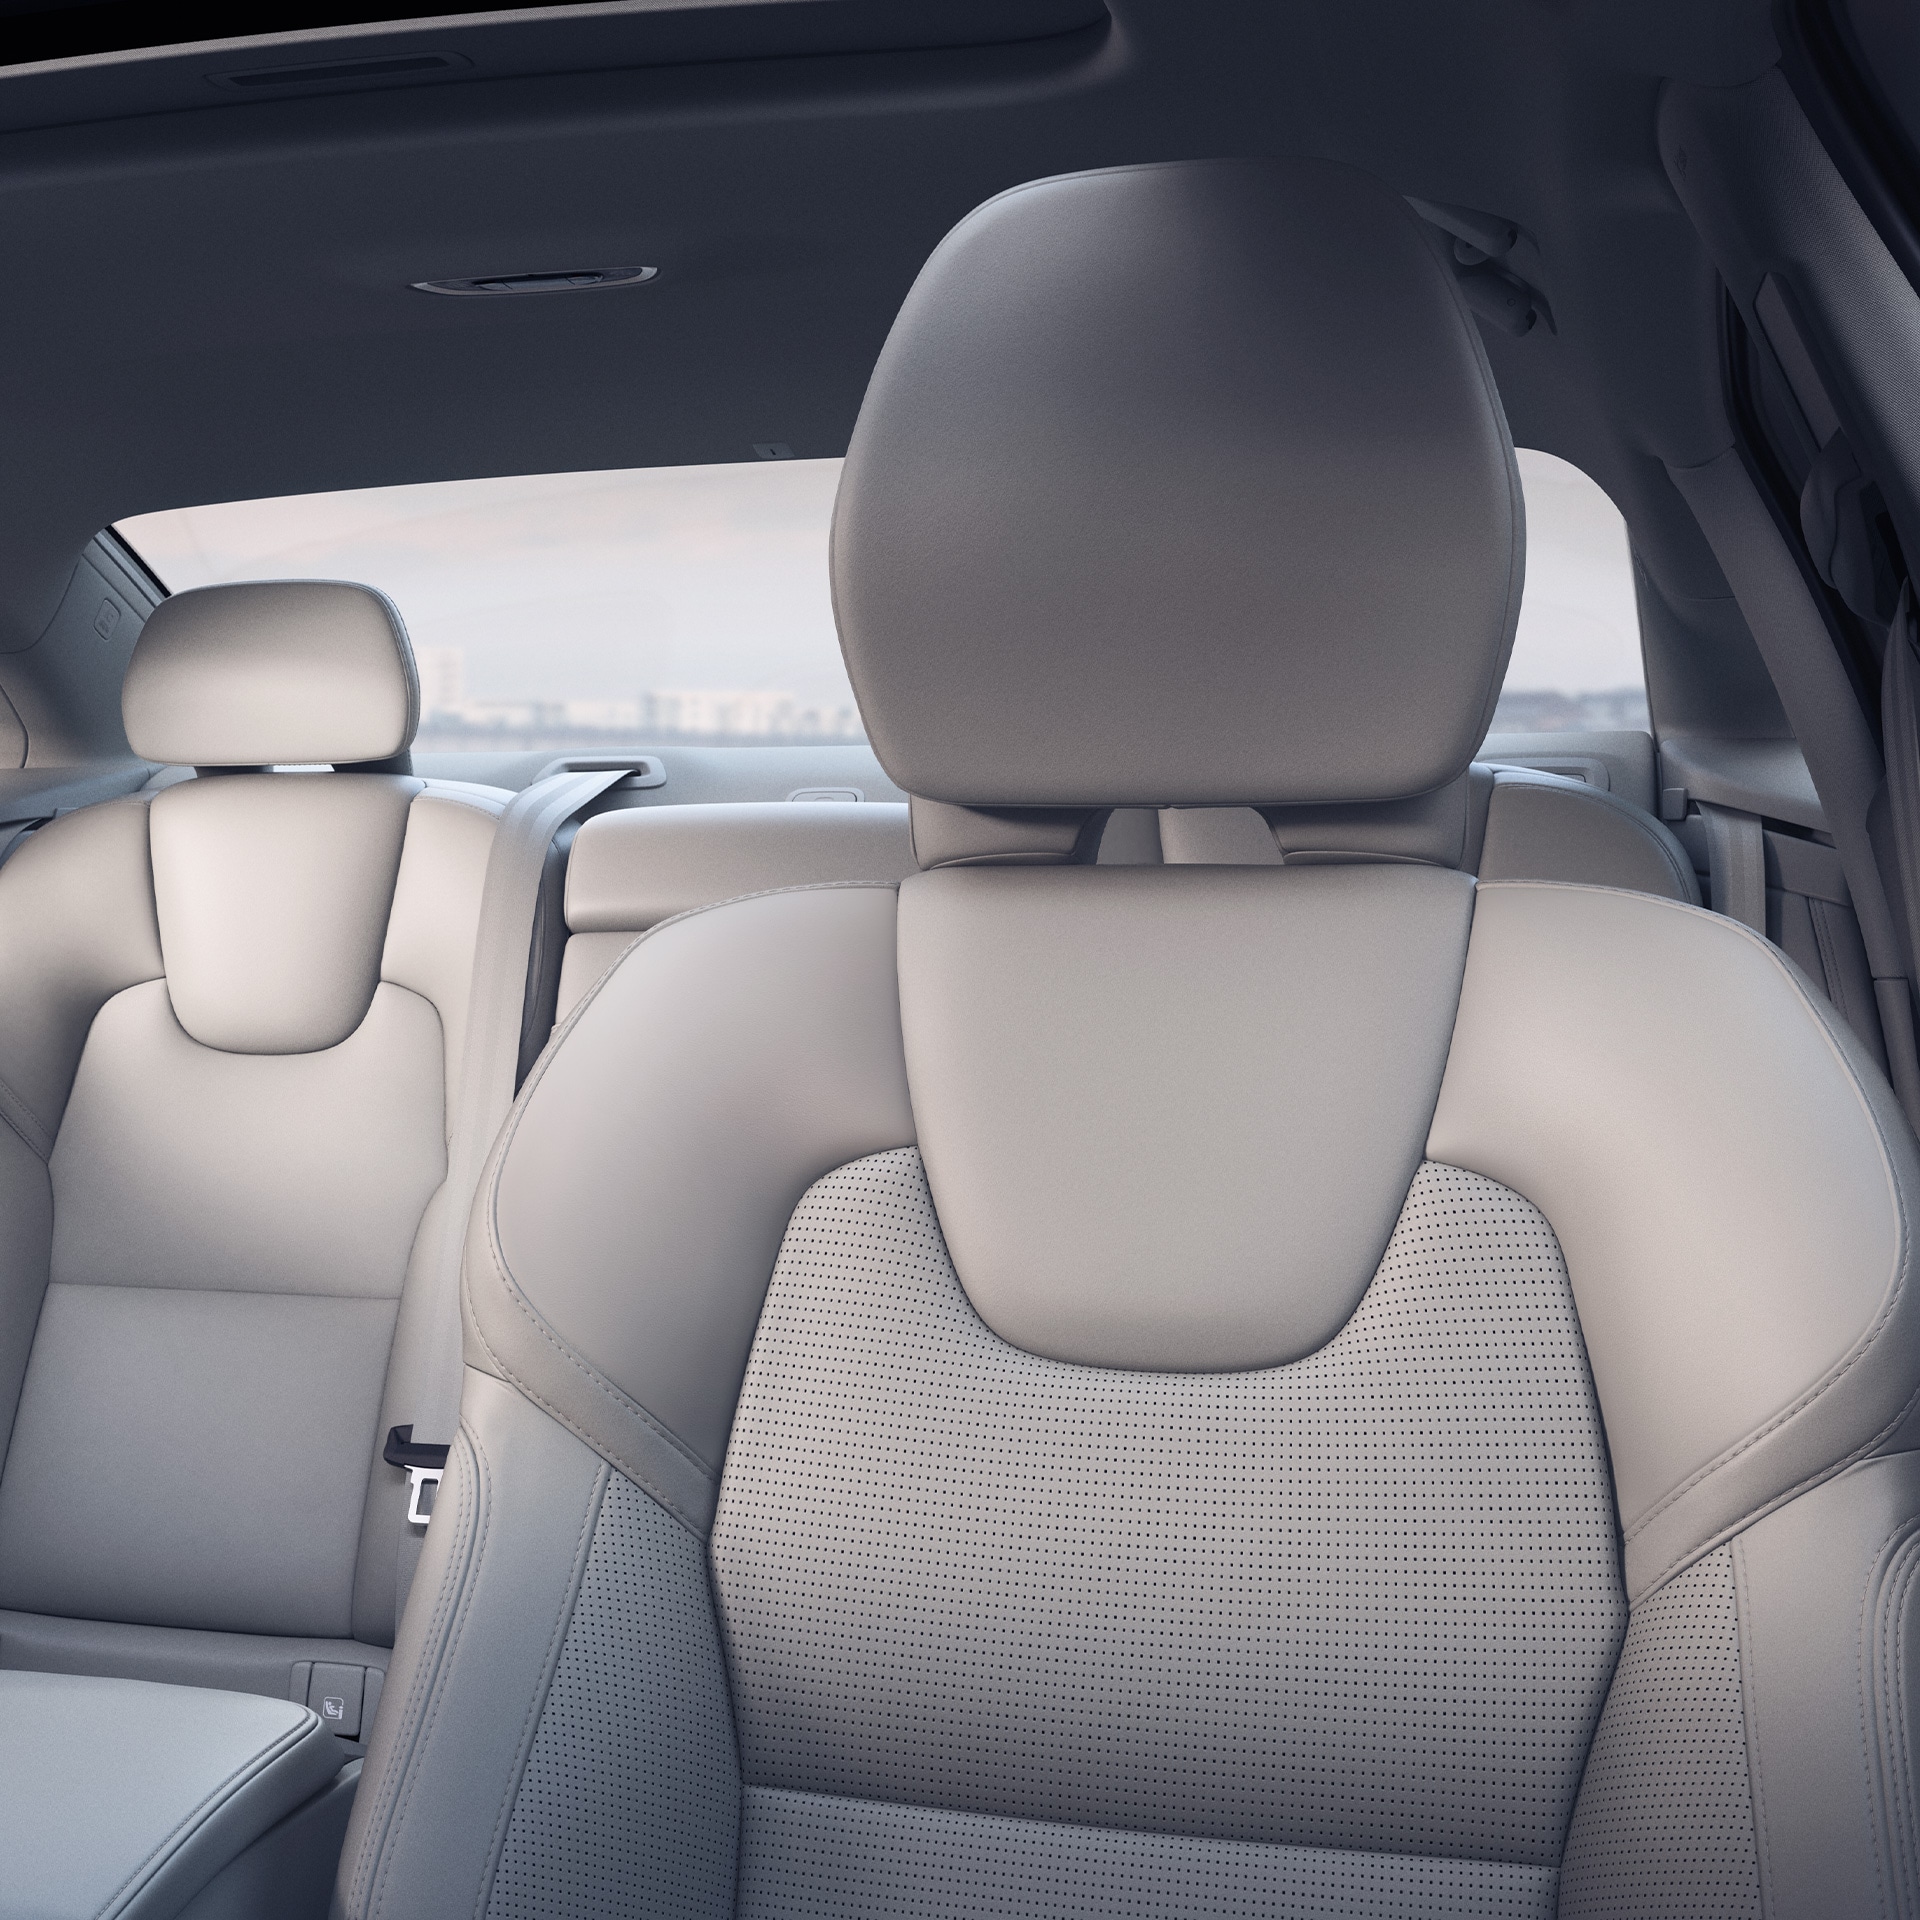 Interior exclusivo del habitáculo de un sedán Volvo S90.